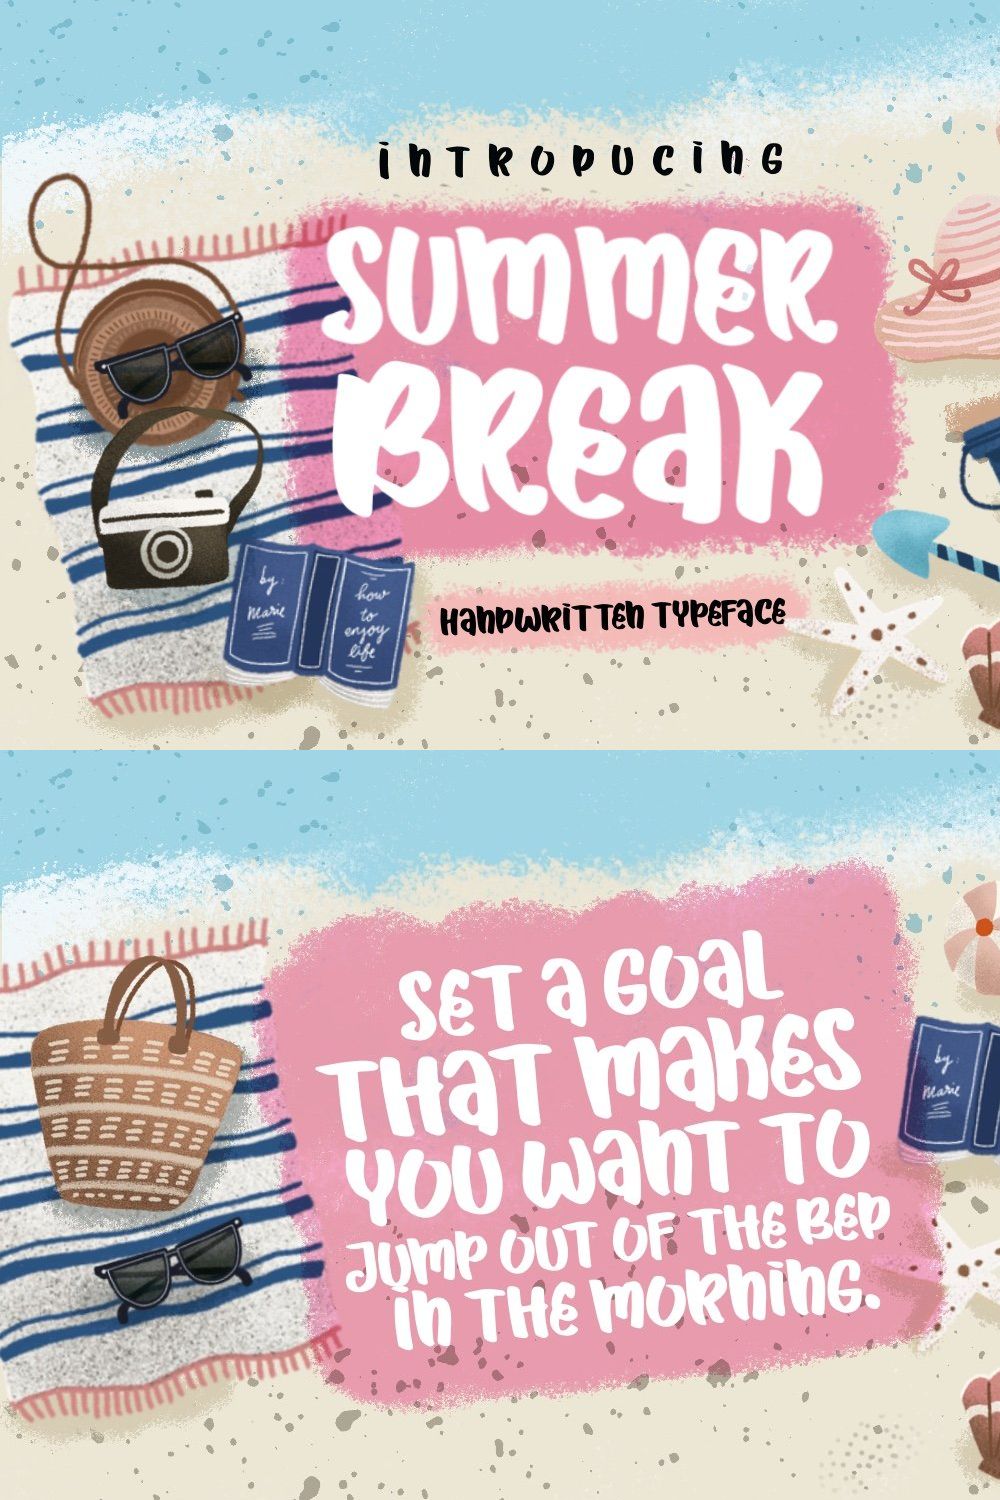 Summer Break pinterest preview image.